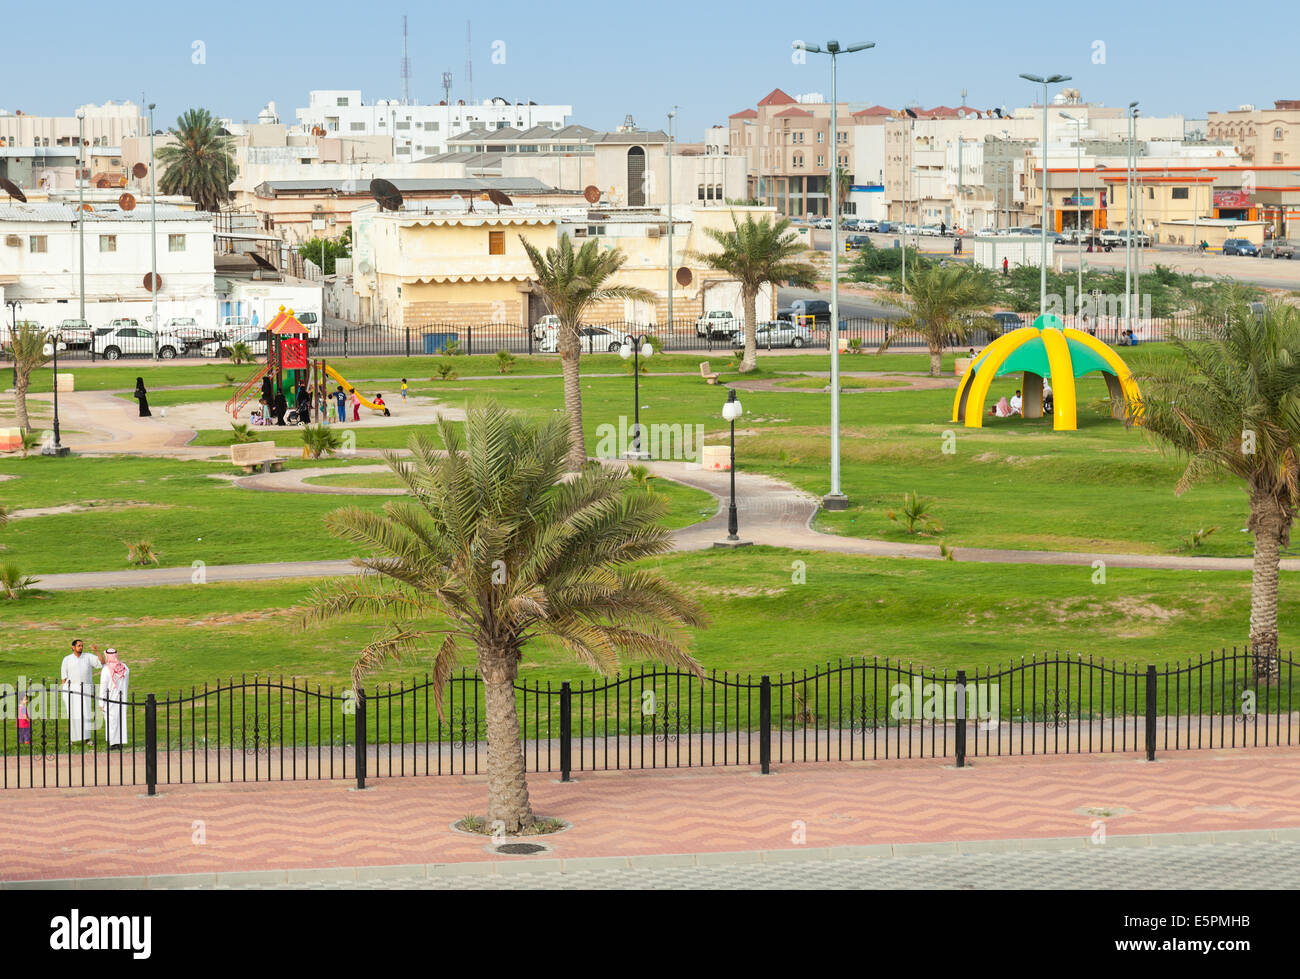 RAHIMA, SAUDI ARABIA - MAY 10, 2014: Playground with ordinary people, Saudi Arabia Stock Photo